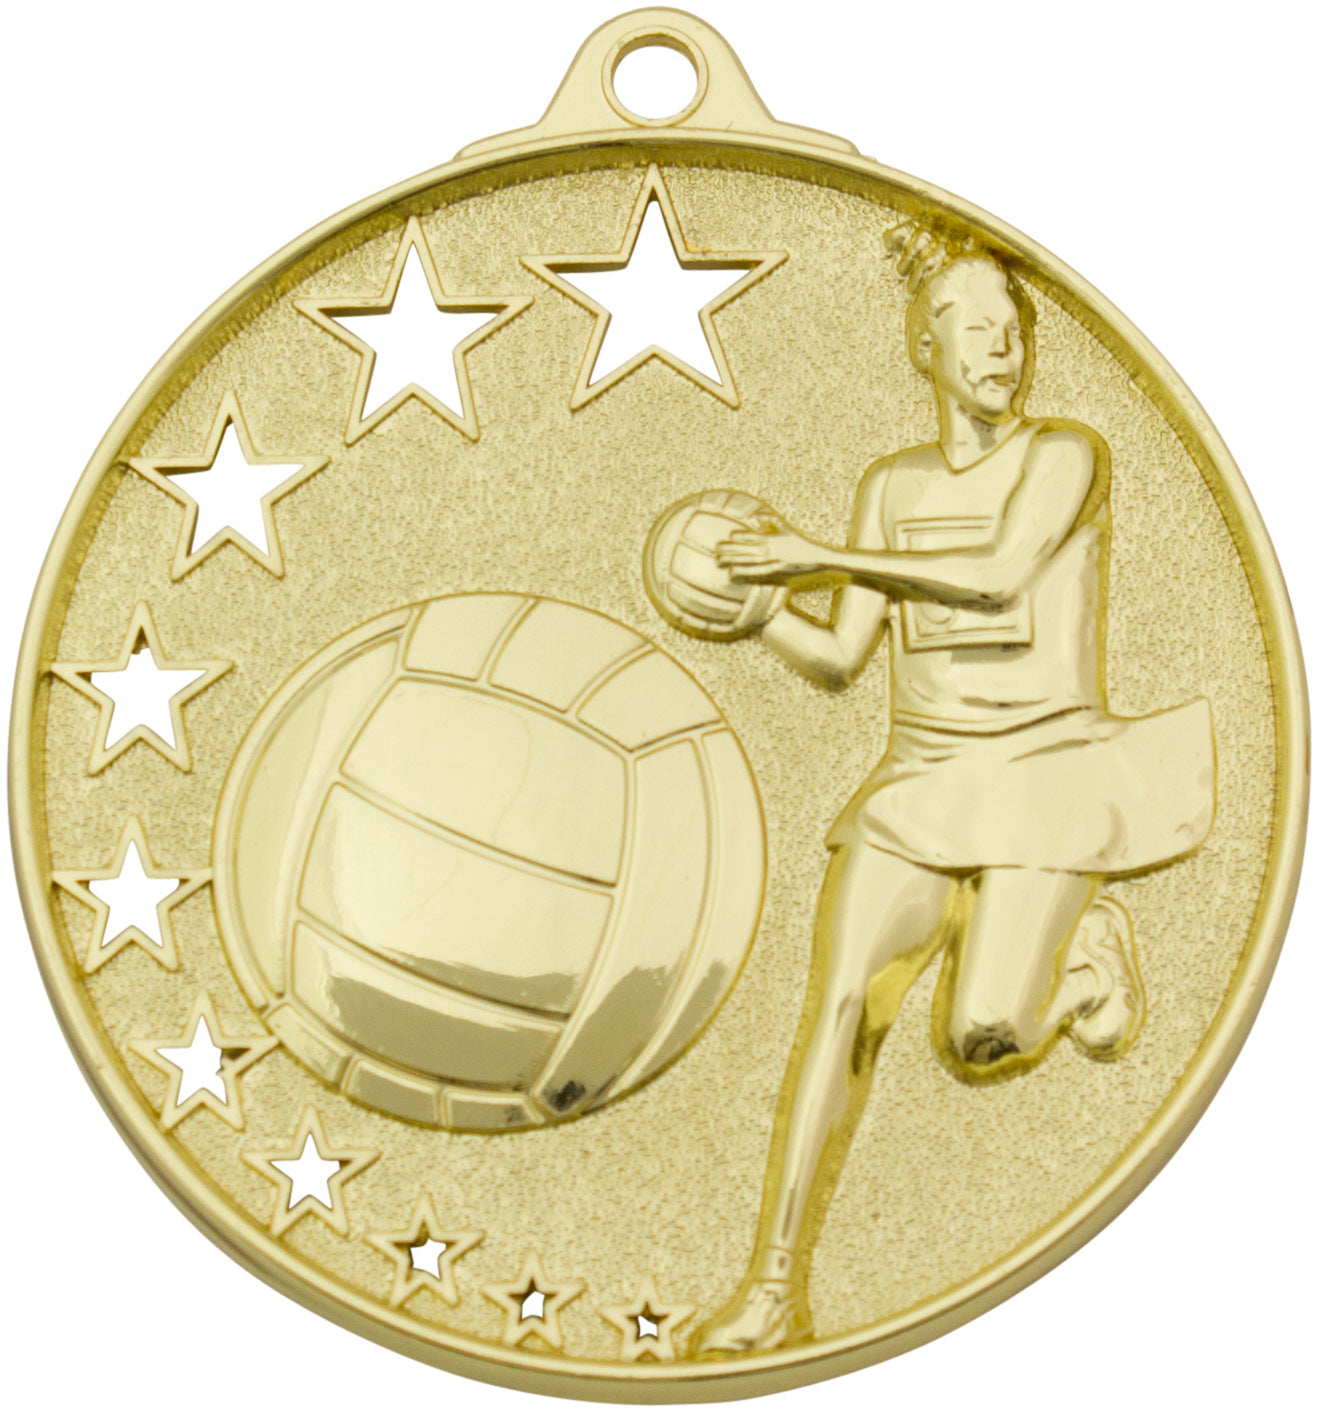 MH911 Netball Medal